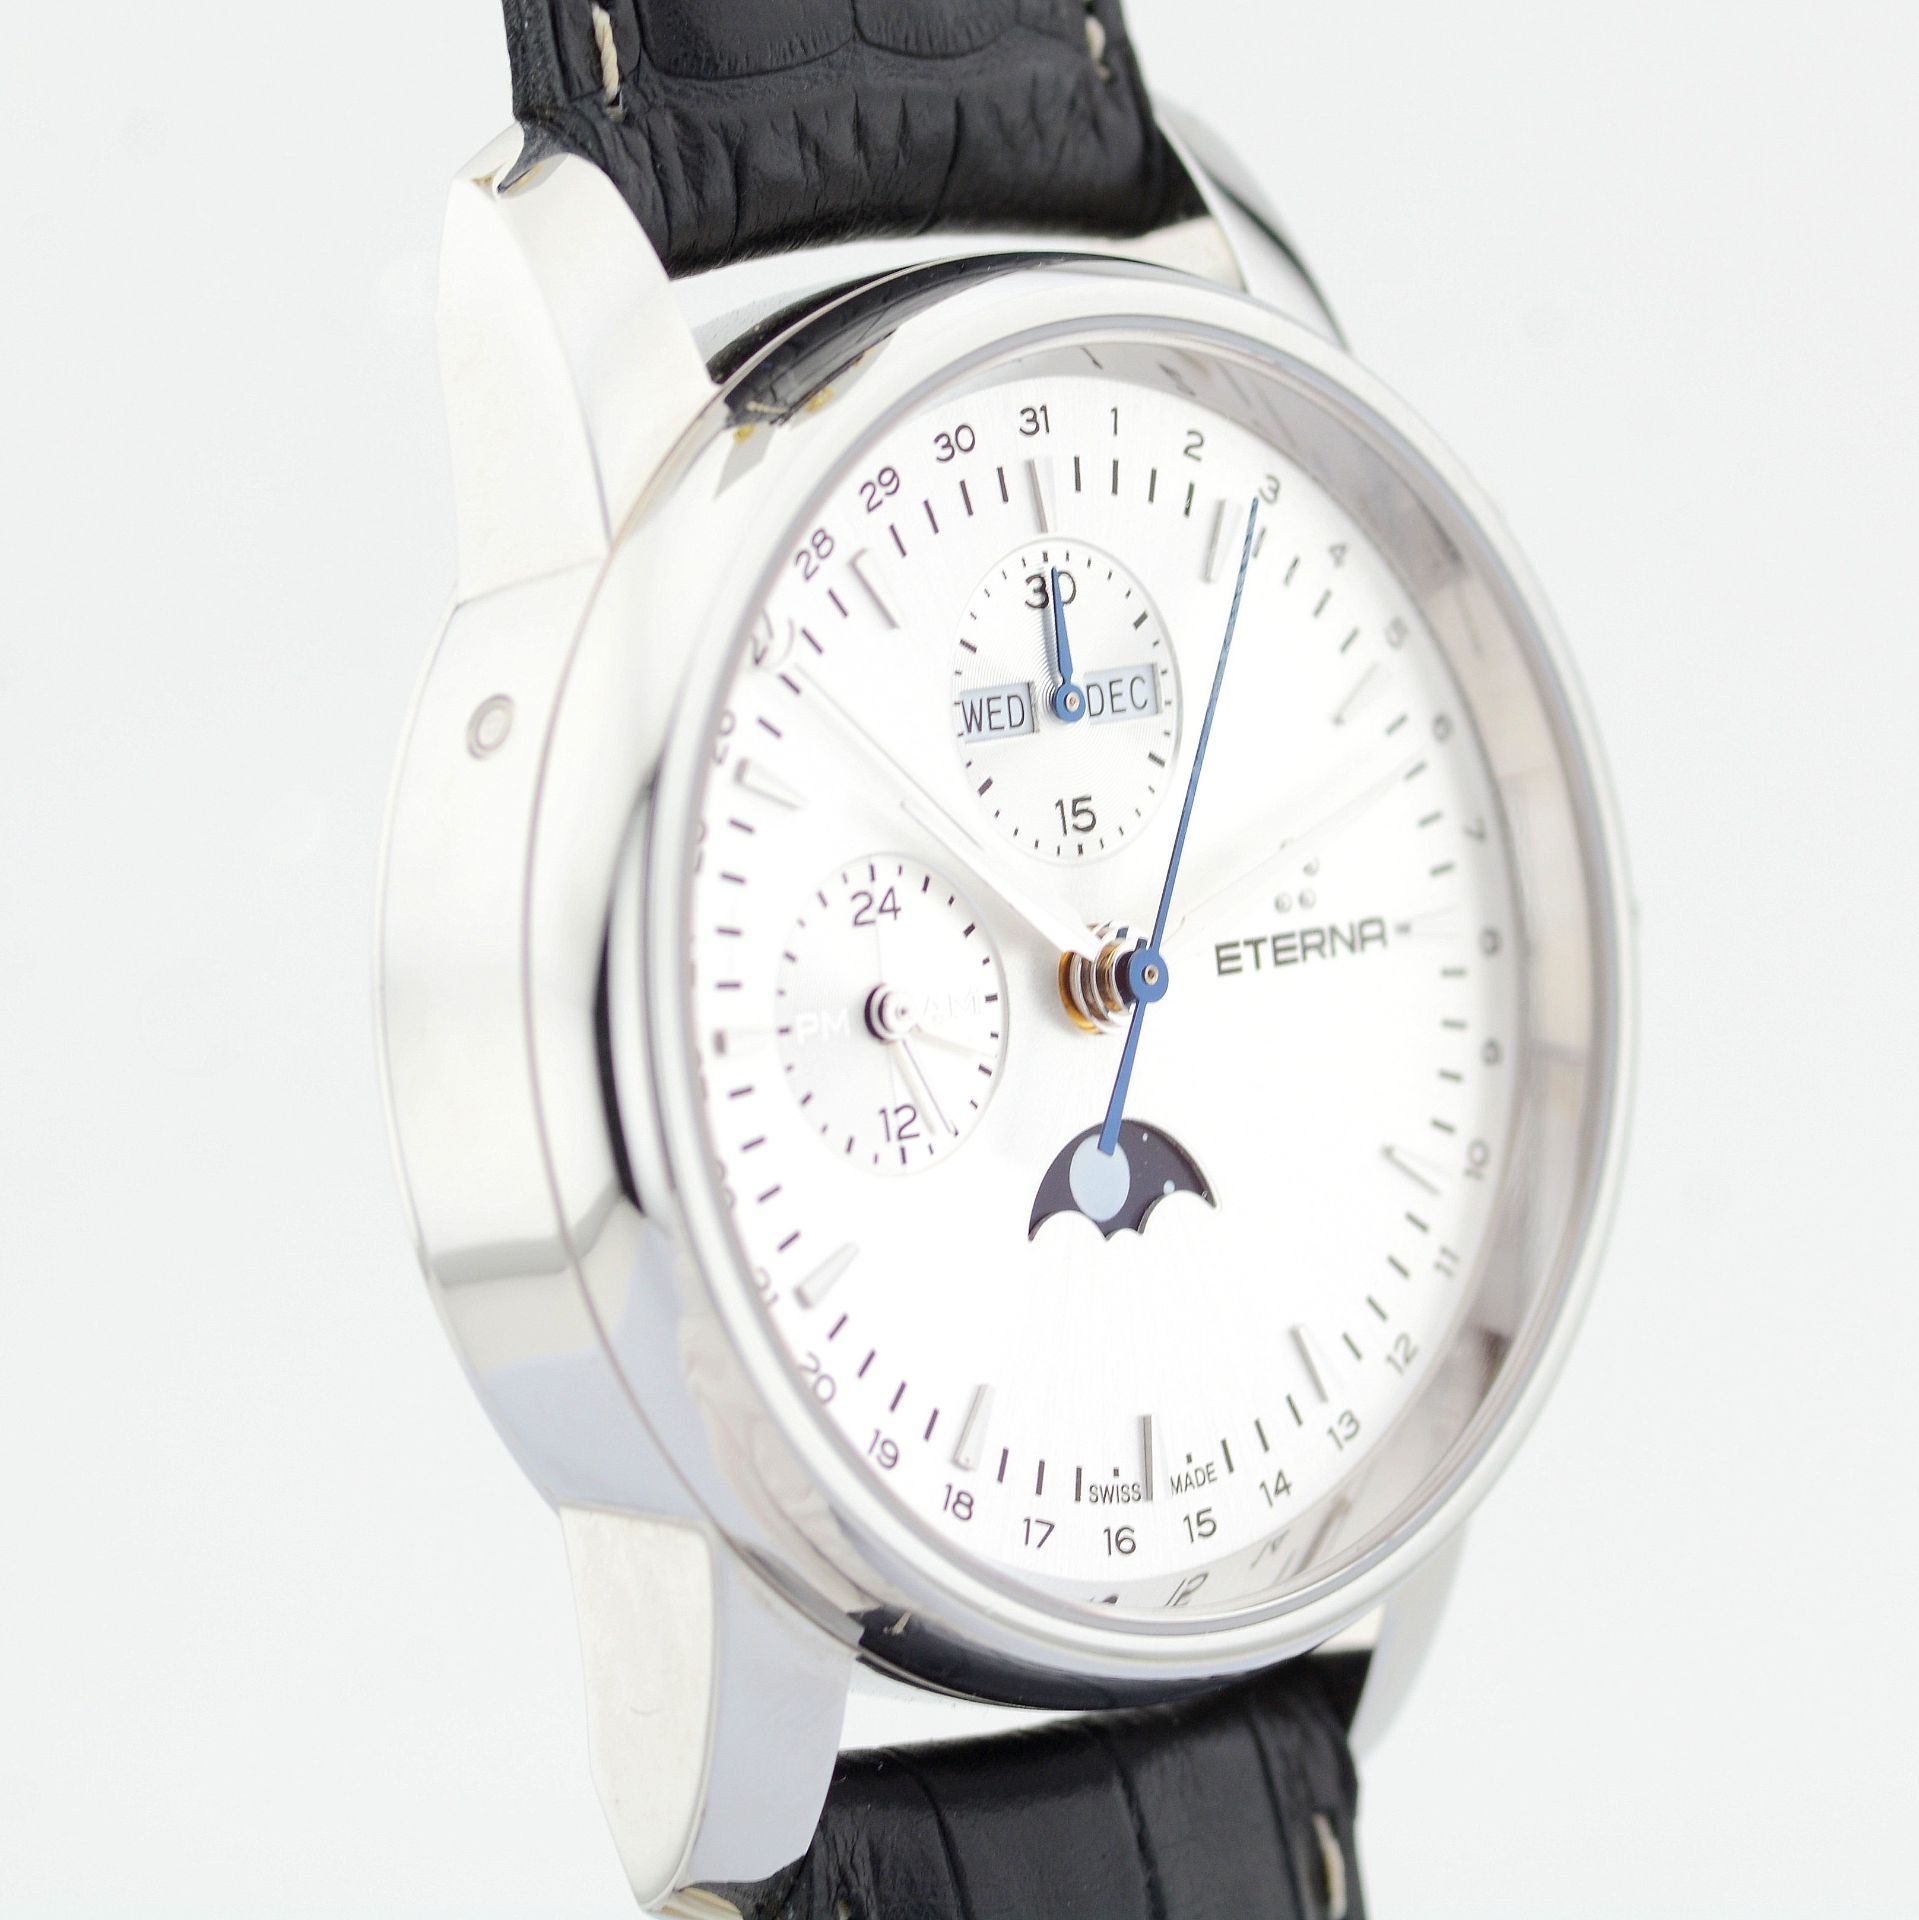 Eterna / Soleure Triple Date Moonphase - Gentlmen's Steel Wrist Watch - Image 6 of 12